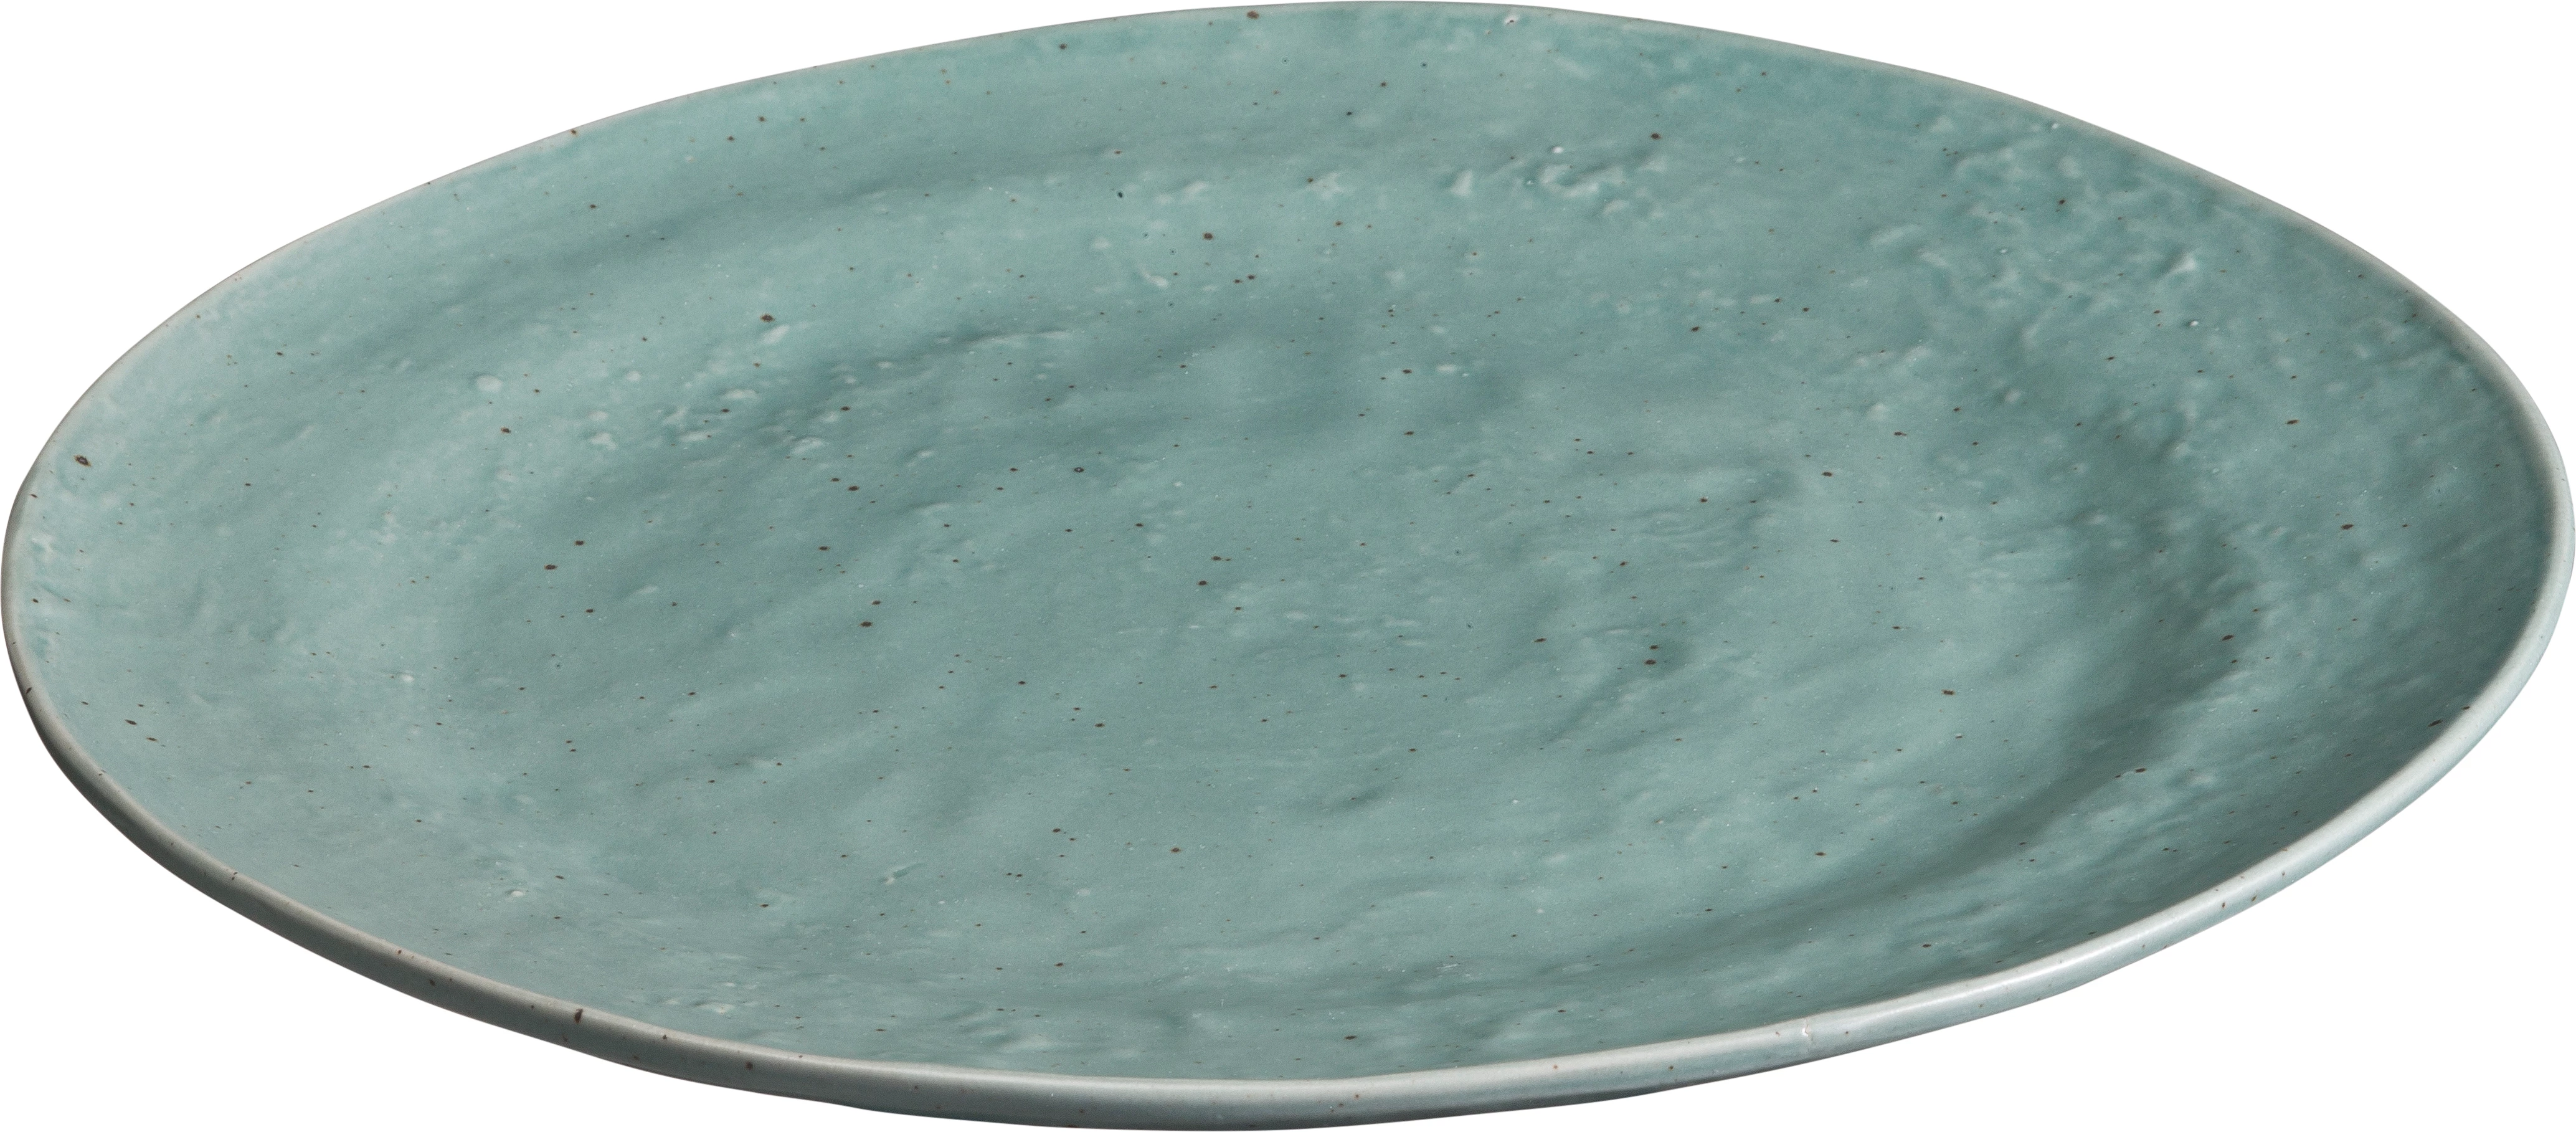 Leafs flad tallerken uden fane, grøn, ø27,5 cm